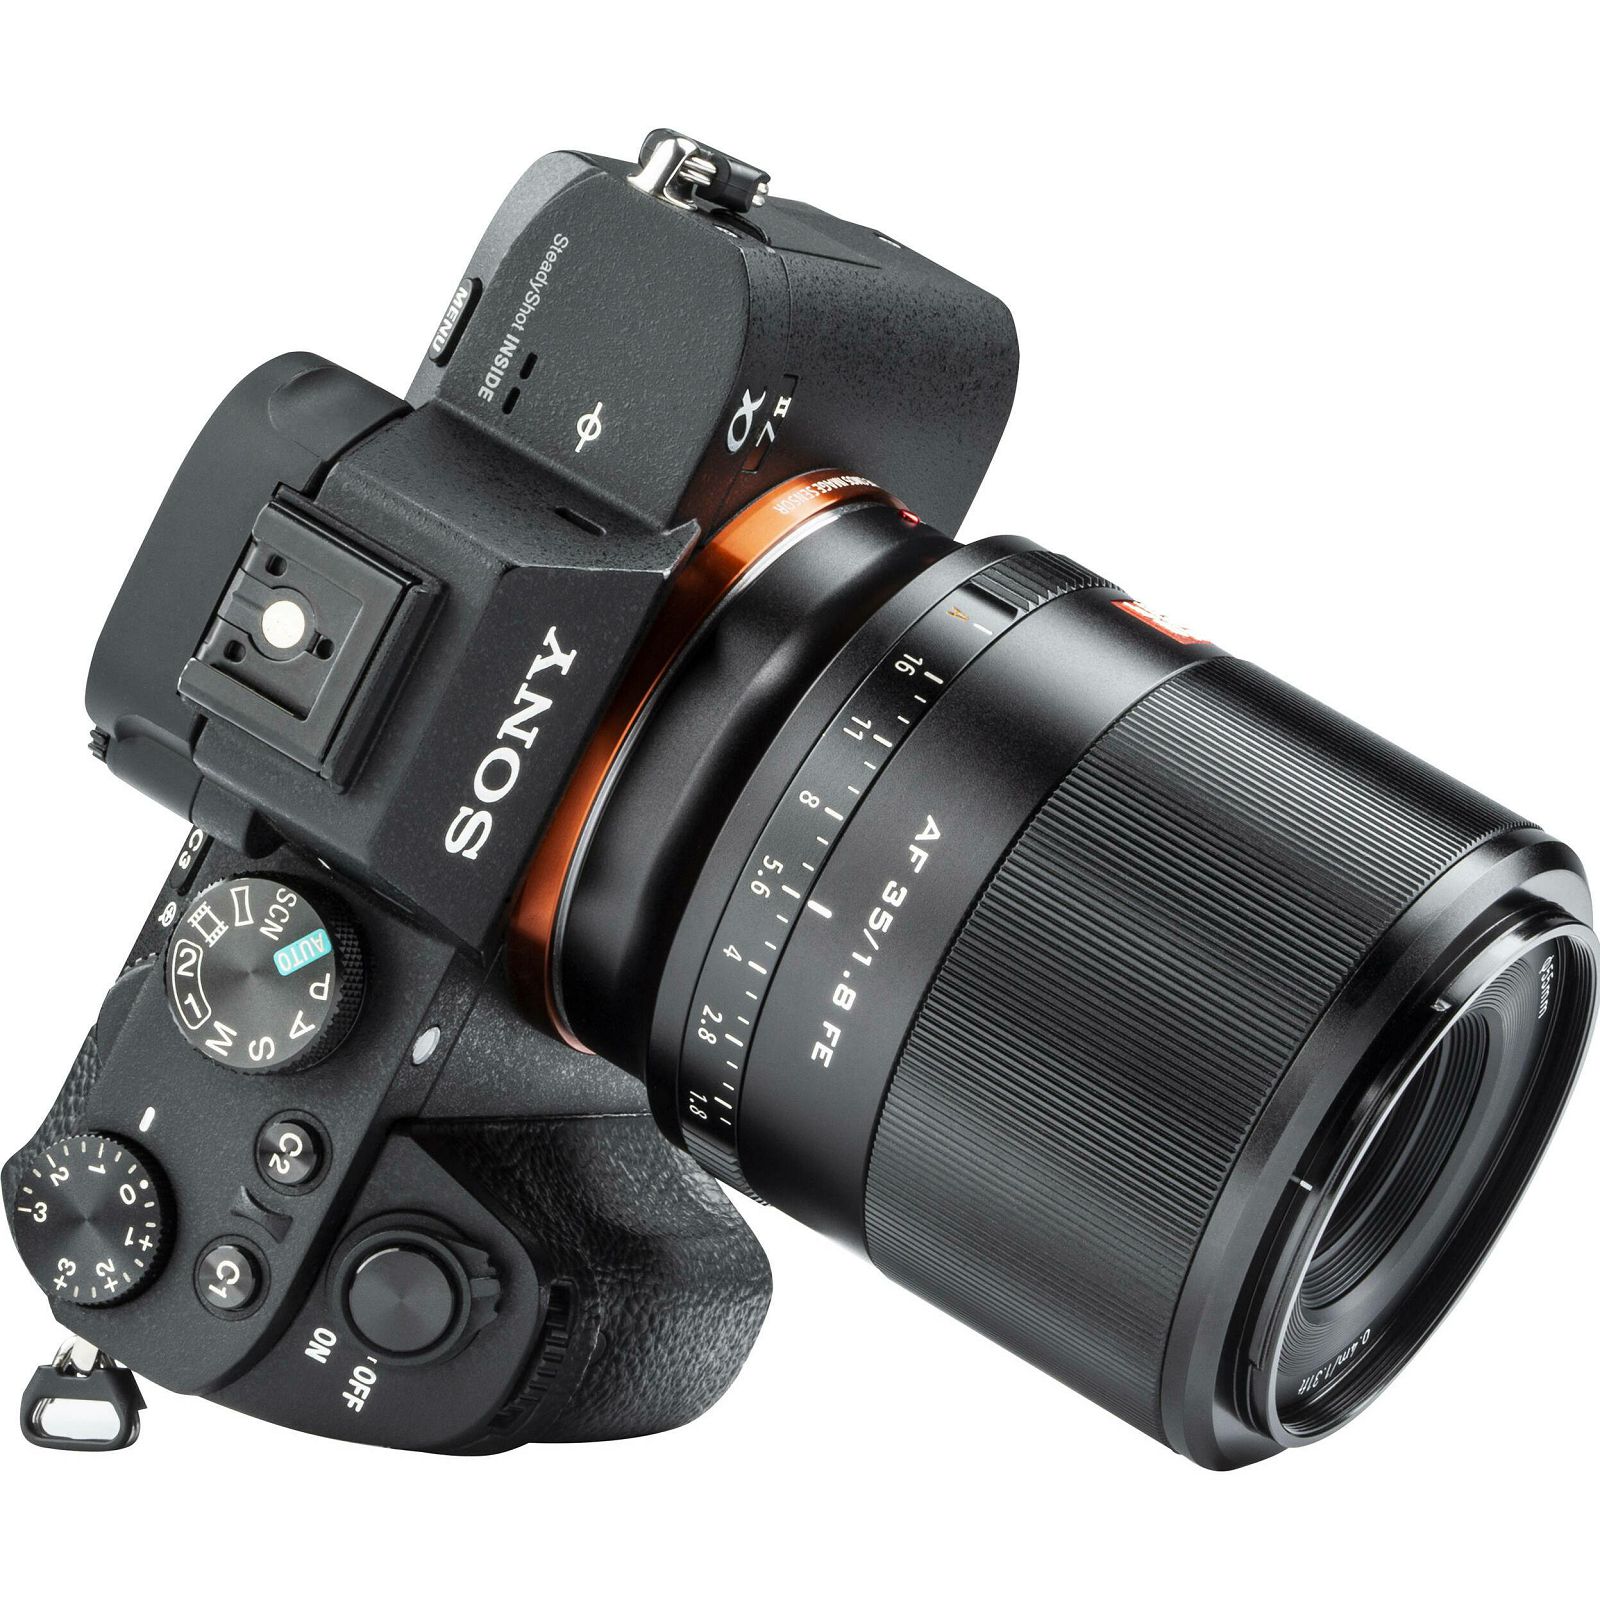 Viltrox AF 35mm f/1.8 FE objektiv za Sony E-mount